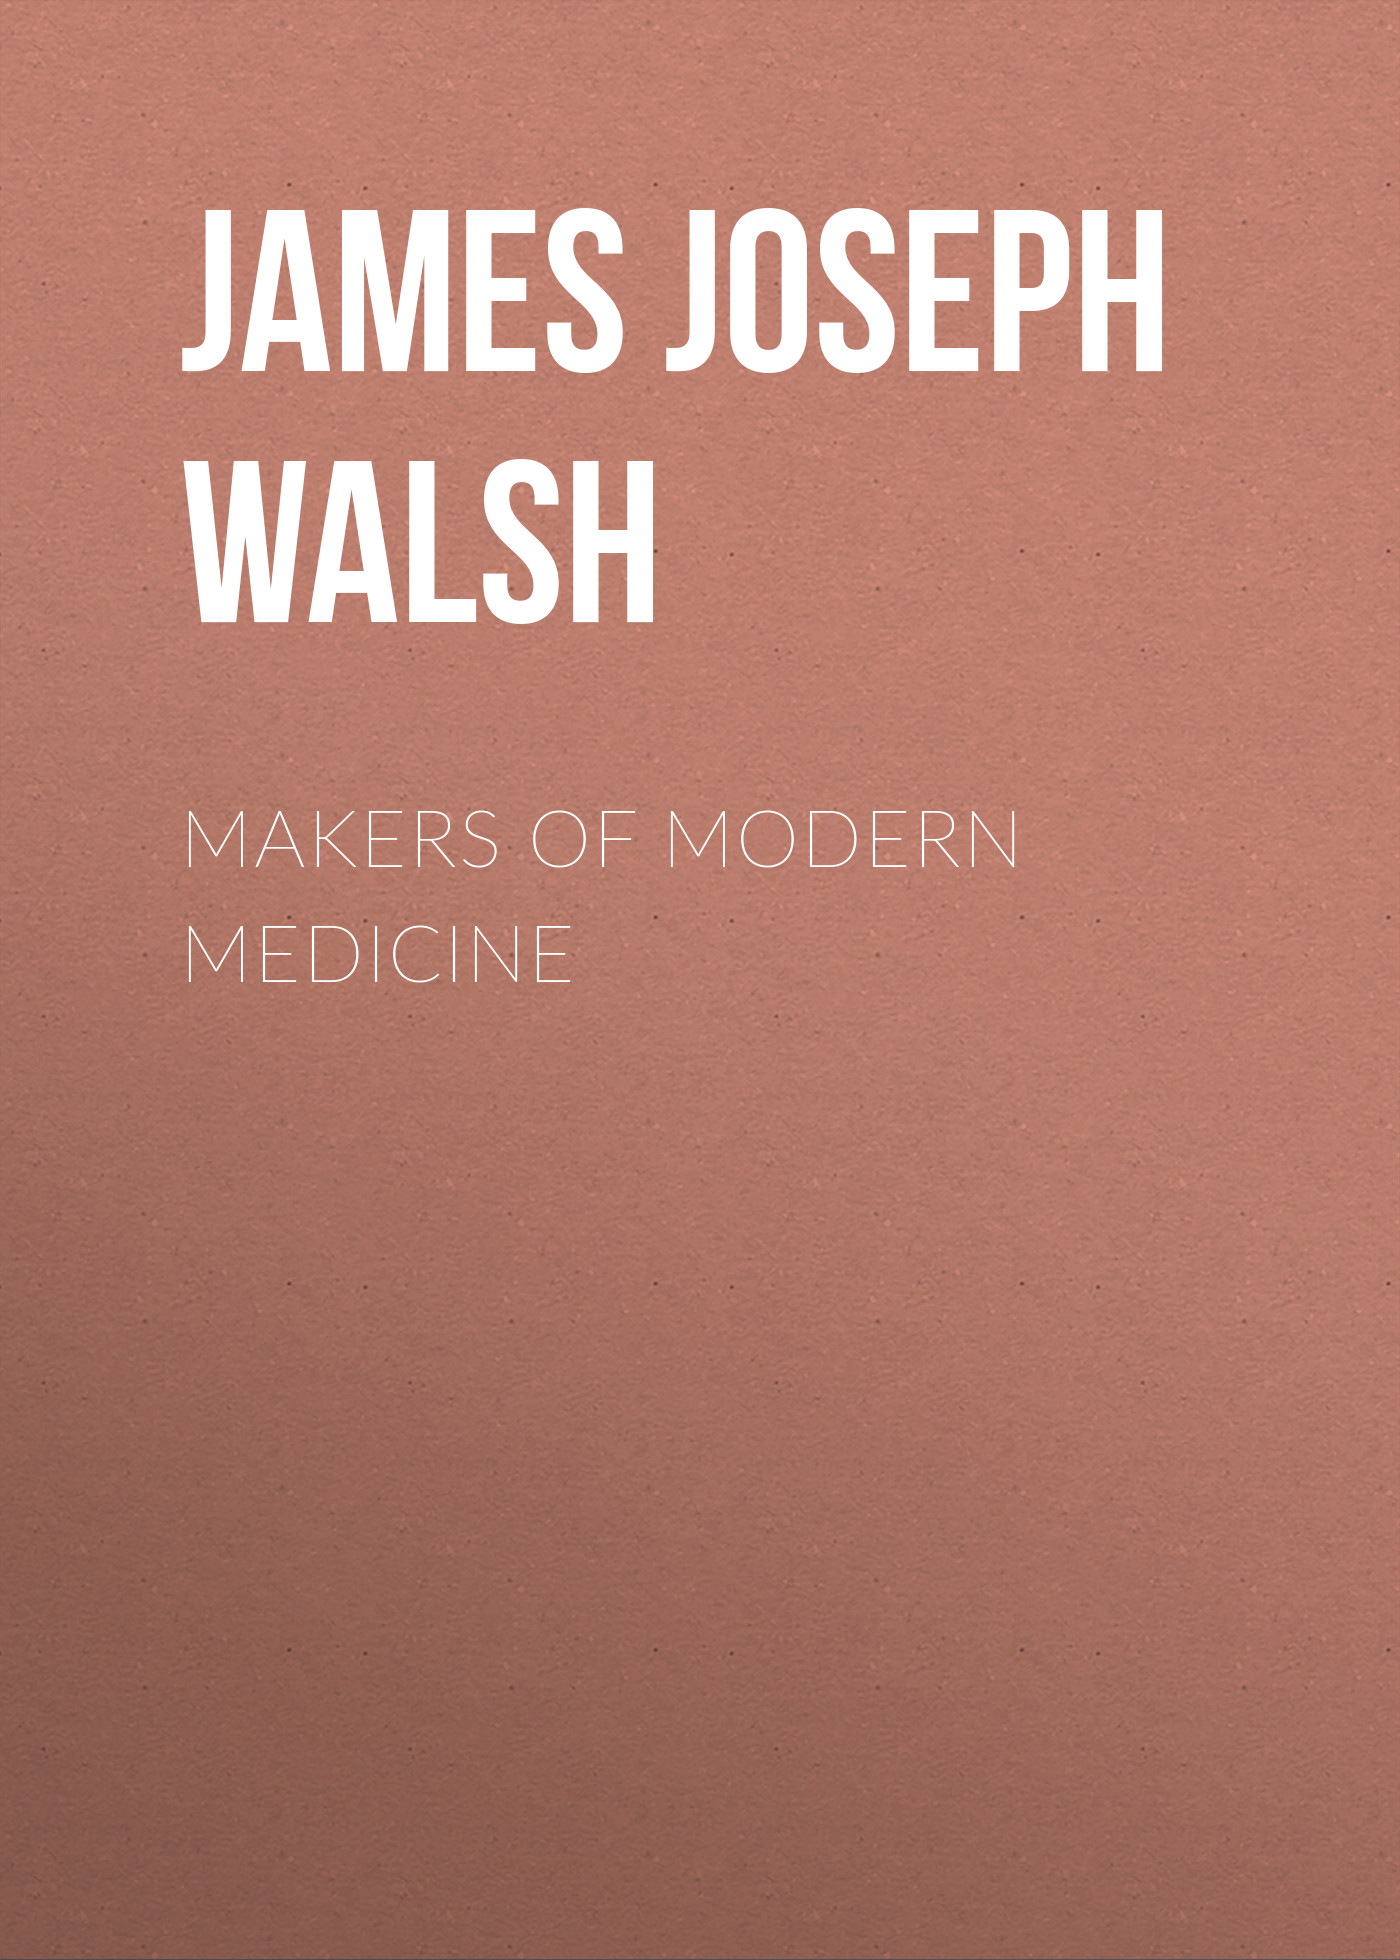 Книга Makers of Modern Medicine из серии , созданная James Walsh, может относится к жанру Зарубежная классика, Медицина, Зарубежная старинная литература. Стоимость электронной книги Makers of Modern Medicine с идентификатором 34282640 составляет 0 руб.